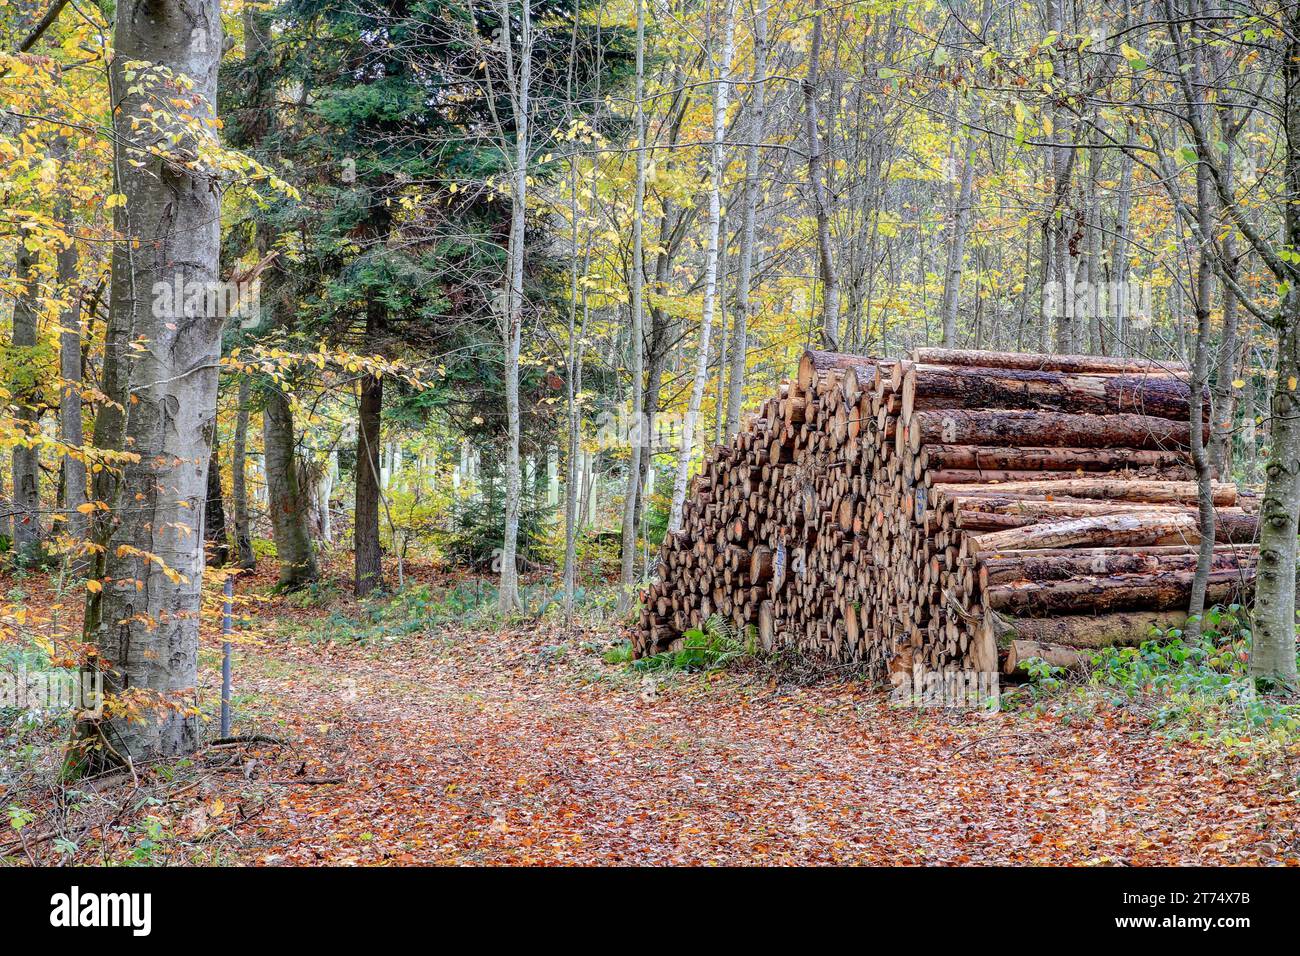 Una magia autunnale si svolge, il sentiero della foresta, un caleidoscopio di foglie colorate, conduce attraverso alberi gialli passando davanti a una pila di tronchi d'albero, un'astuzia silenziosa Foto Stock